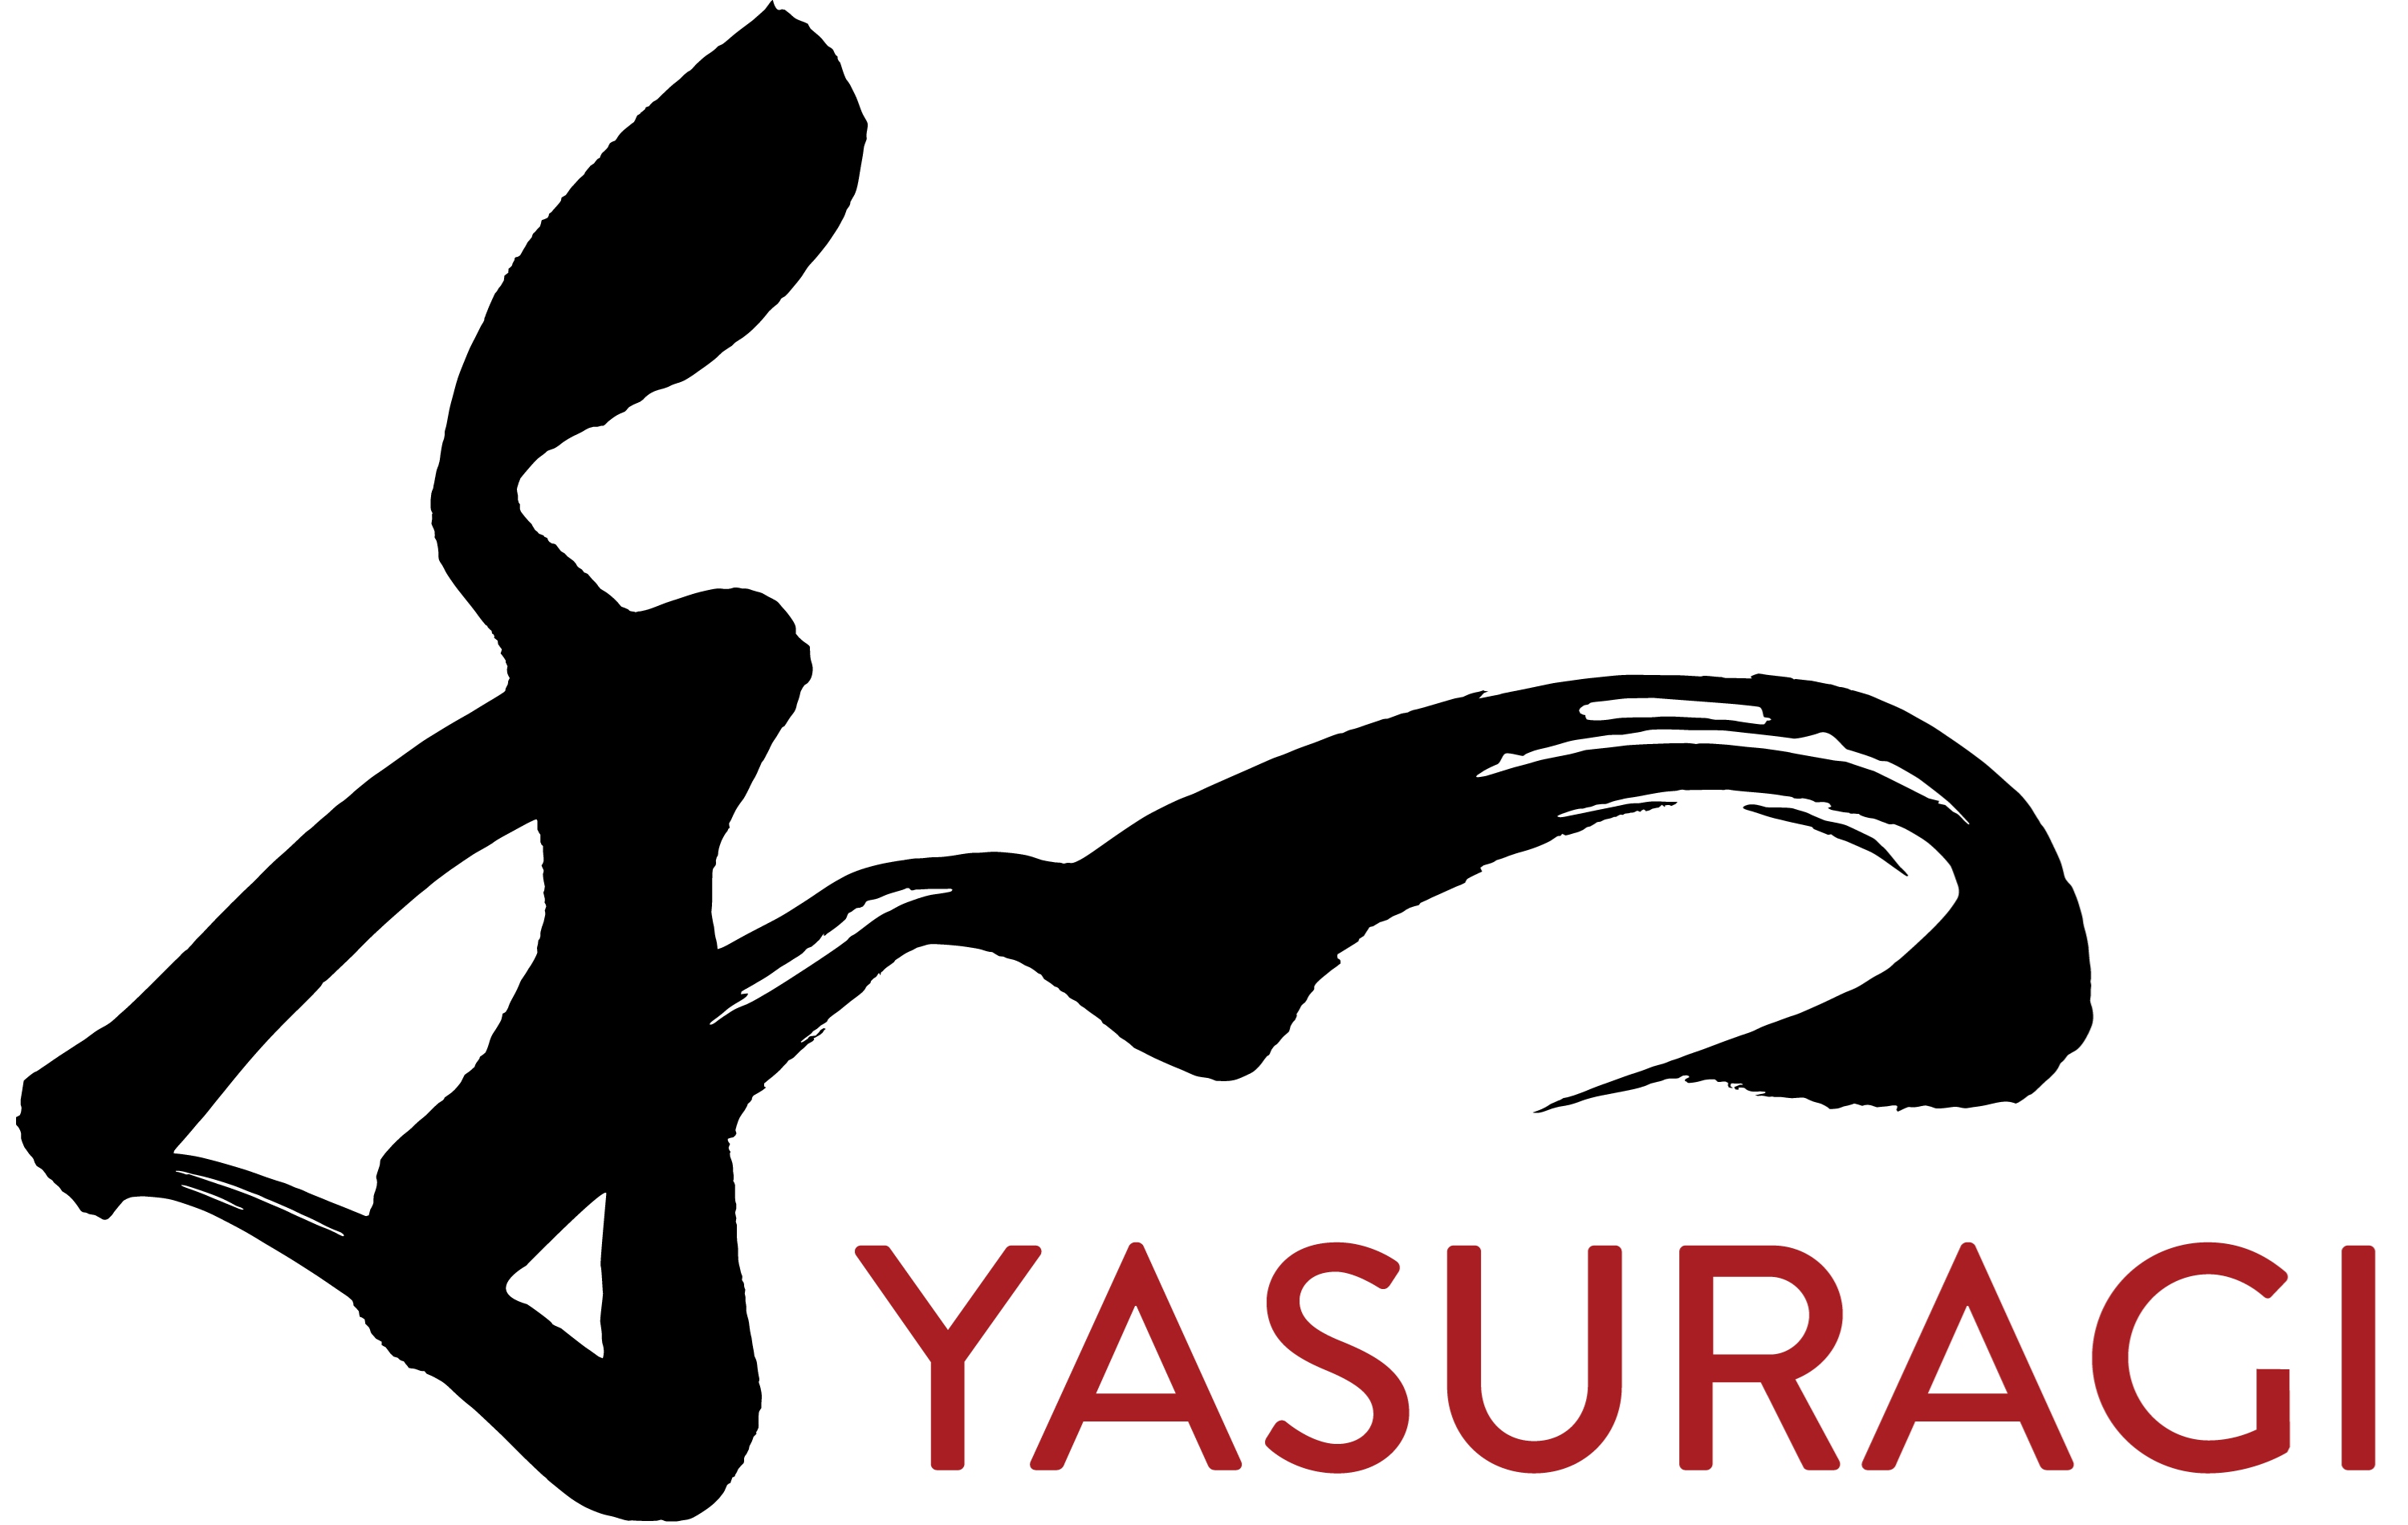 Yasuragi